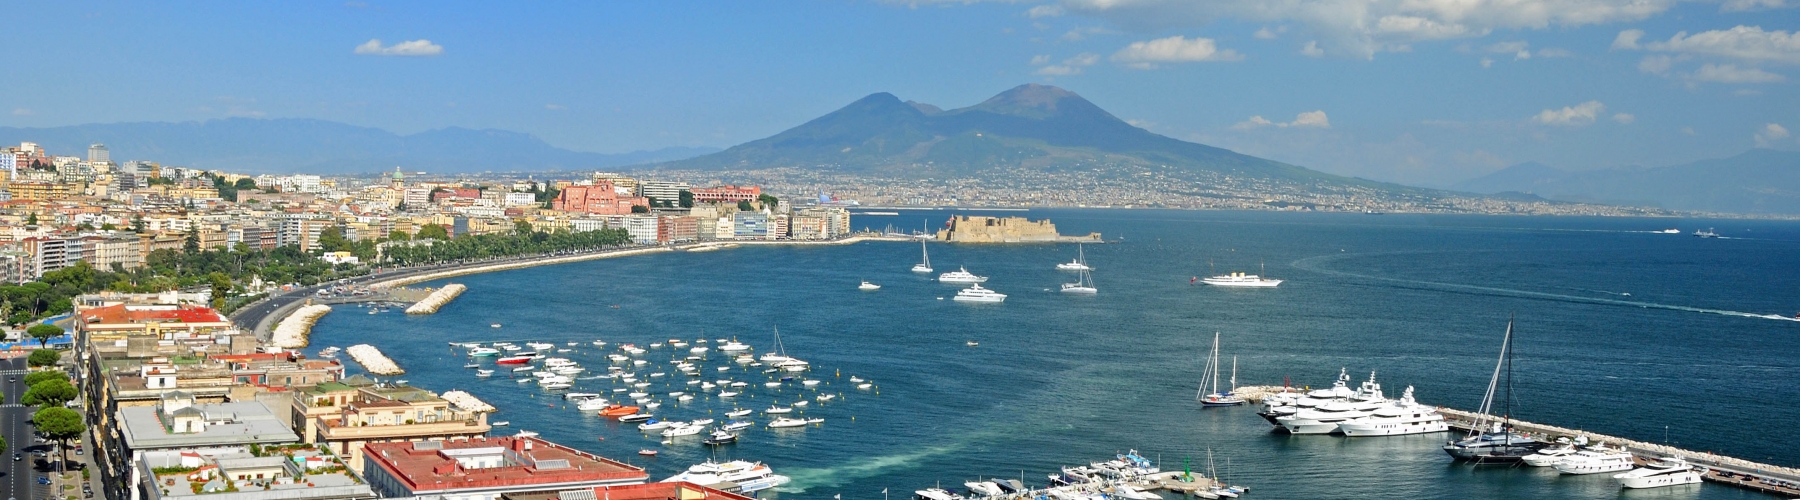 Séminaire Italie du Sud - Naples et Pompéi